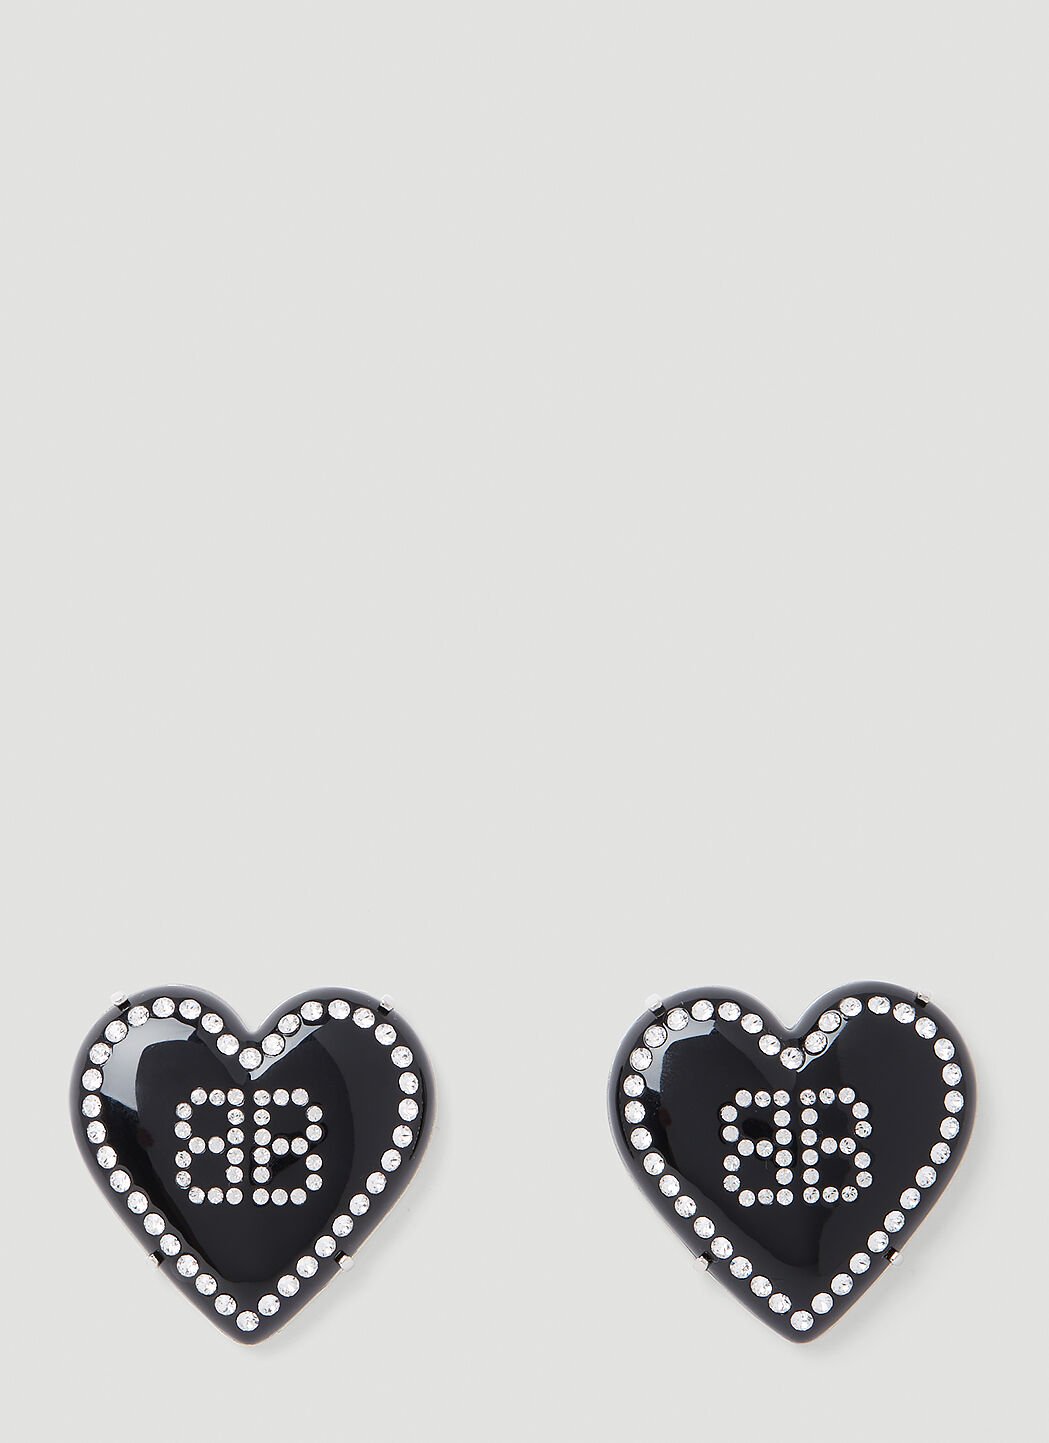 Vivienne Westwood Heart Logo Earrings Black vvw0254048